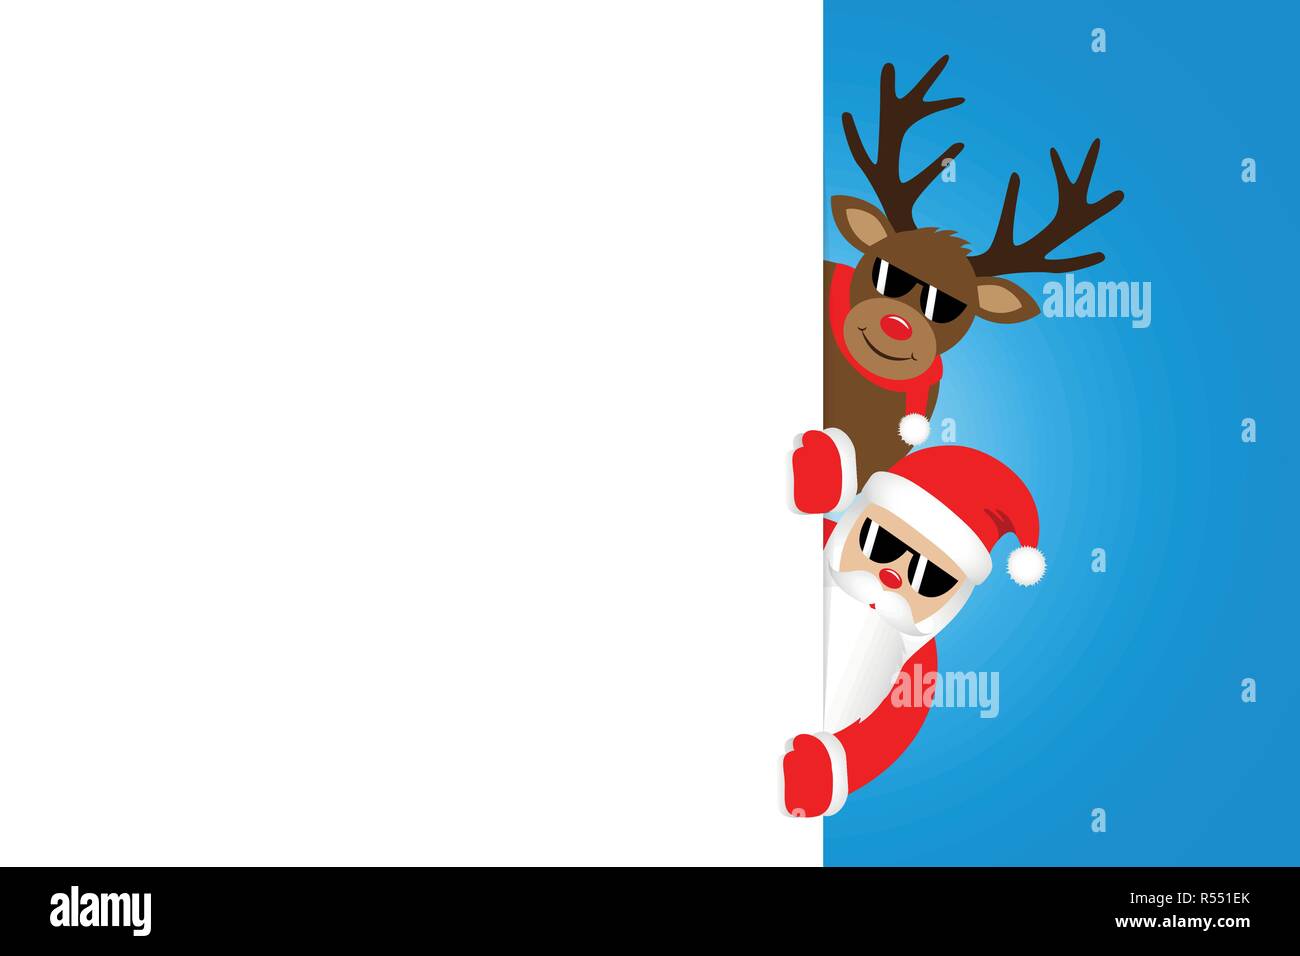 Cool Weihnachtsmann und Rentier mit Sonnenbrille Weihnachten cartoon weiße Fahne für Kopie Raumzeiger Abbildung: EPS 10. Stock Vektor